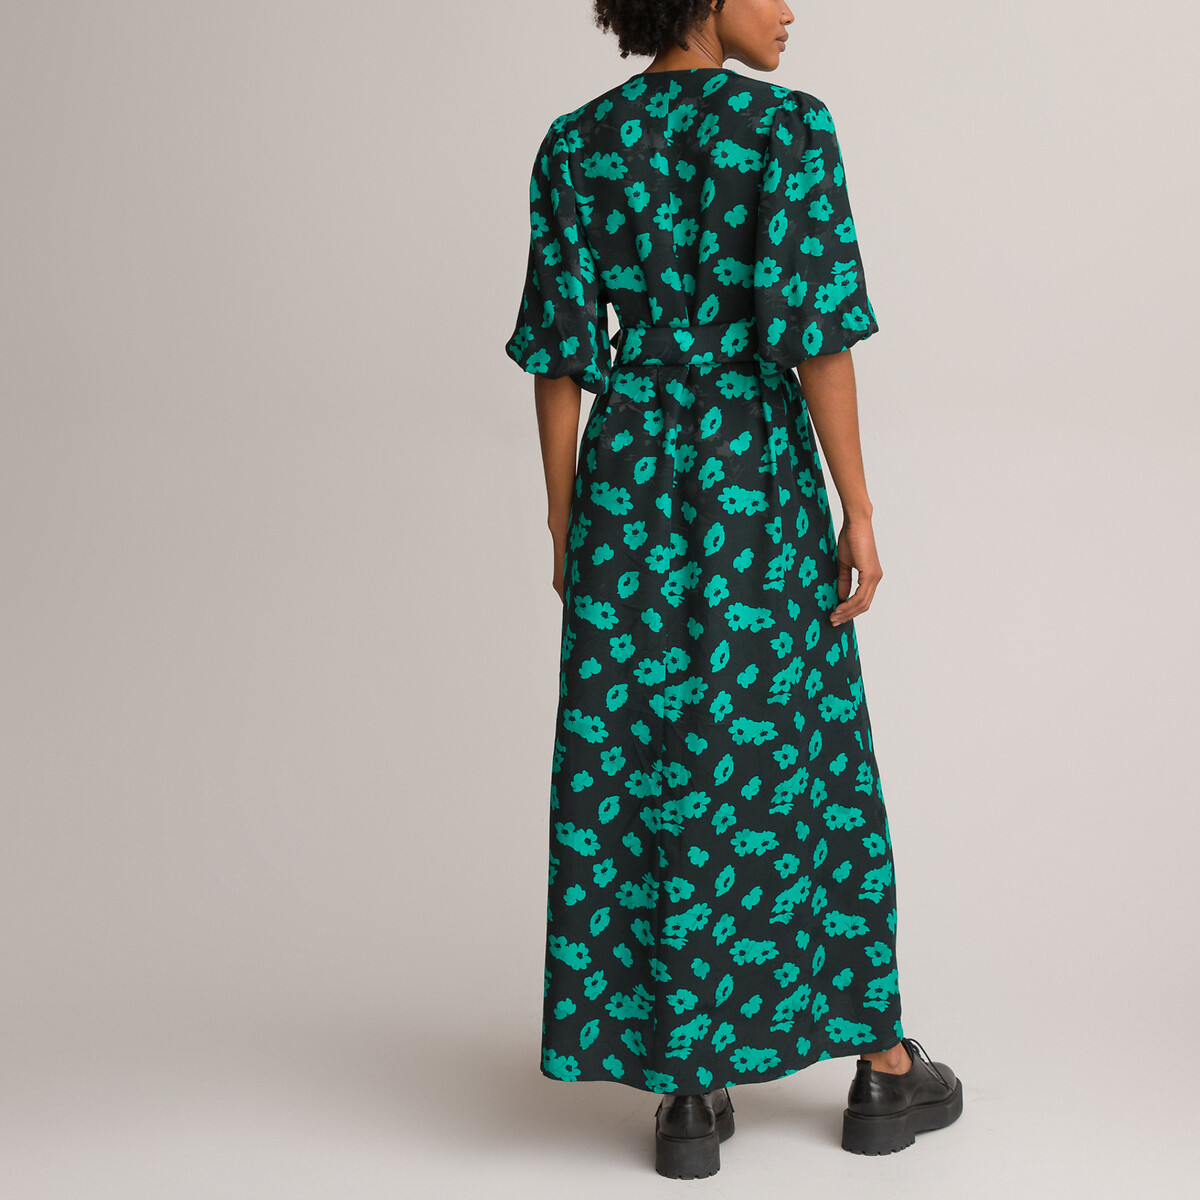 Платье Длинное с V-образным вырезом и рукавами 34 цветочный принт 56 черный LaRedoute, размер 56 - фото 4